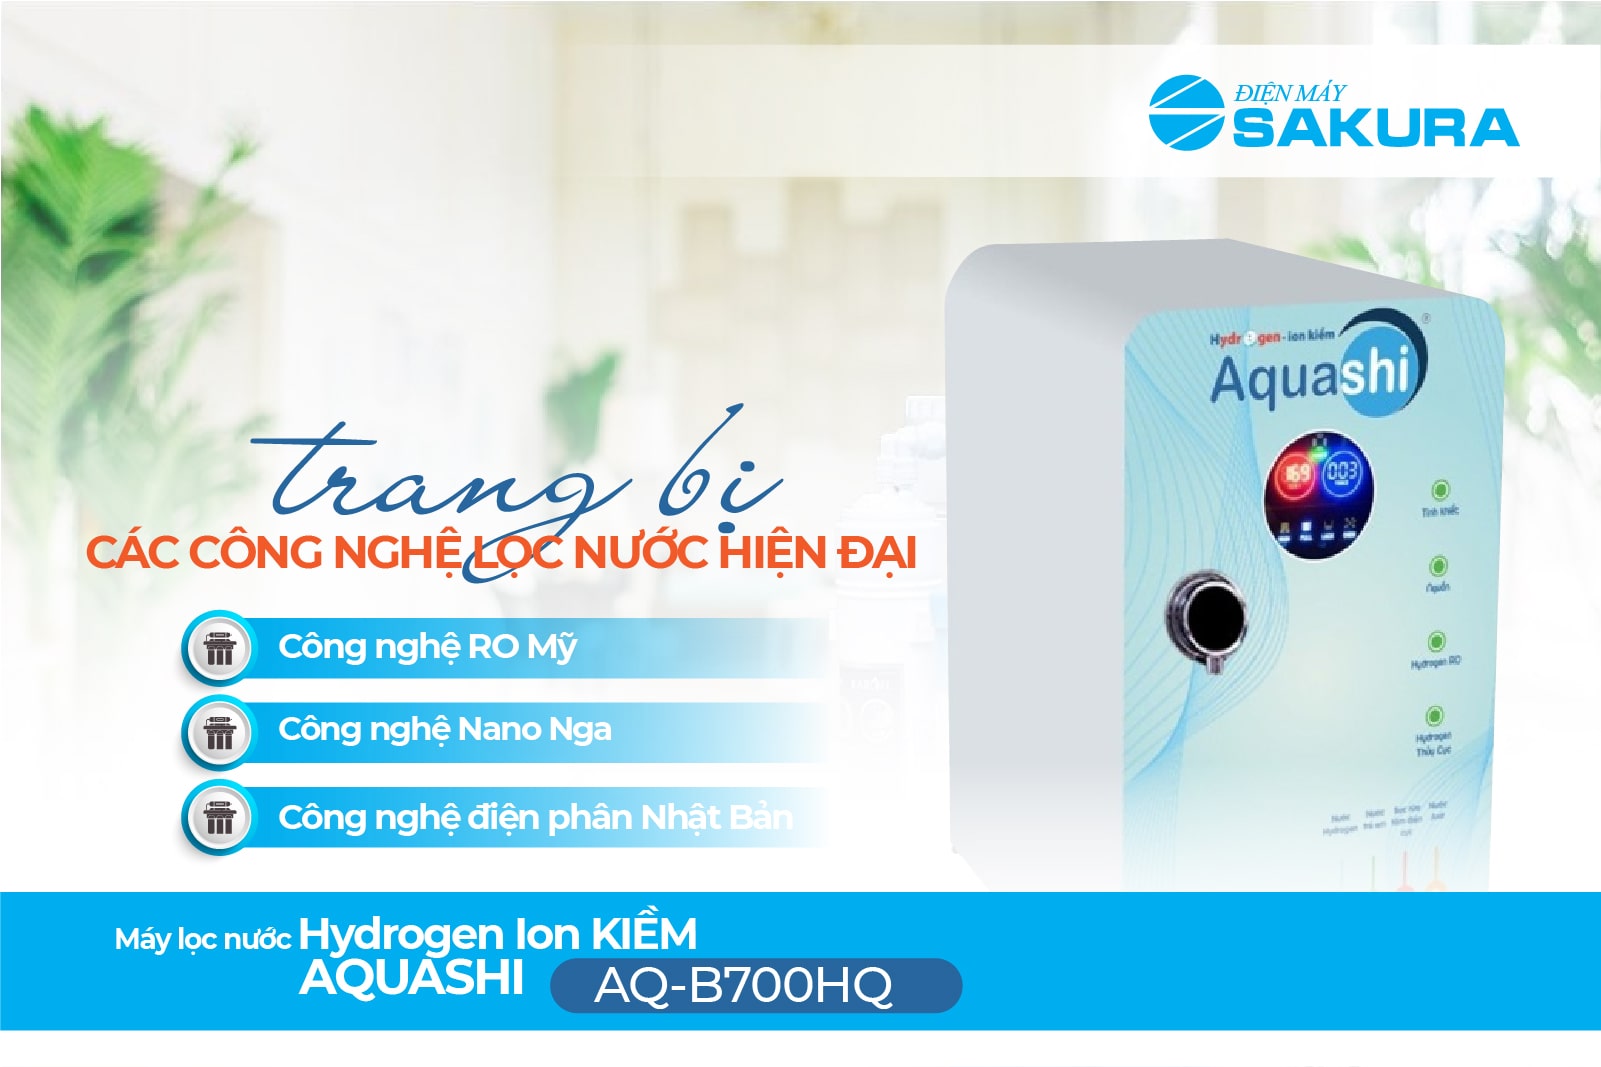 Máy lọc nước Hydrogen ion kiềm Aquashi AQ-B700HQ công nghệ lọc tân tiến, hiện đại